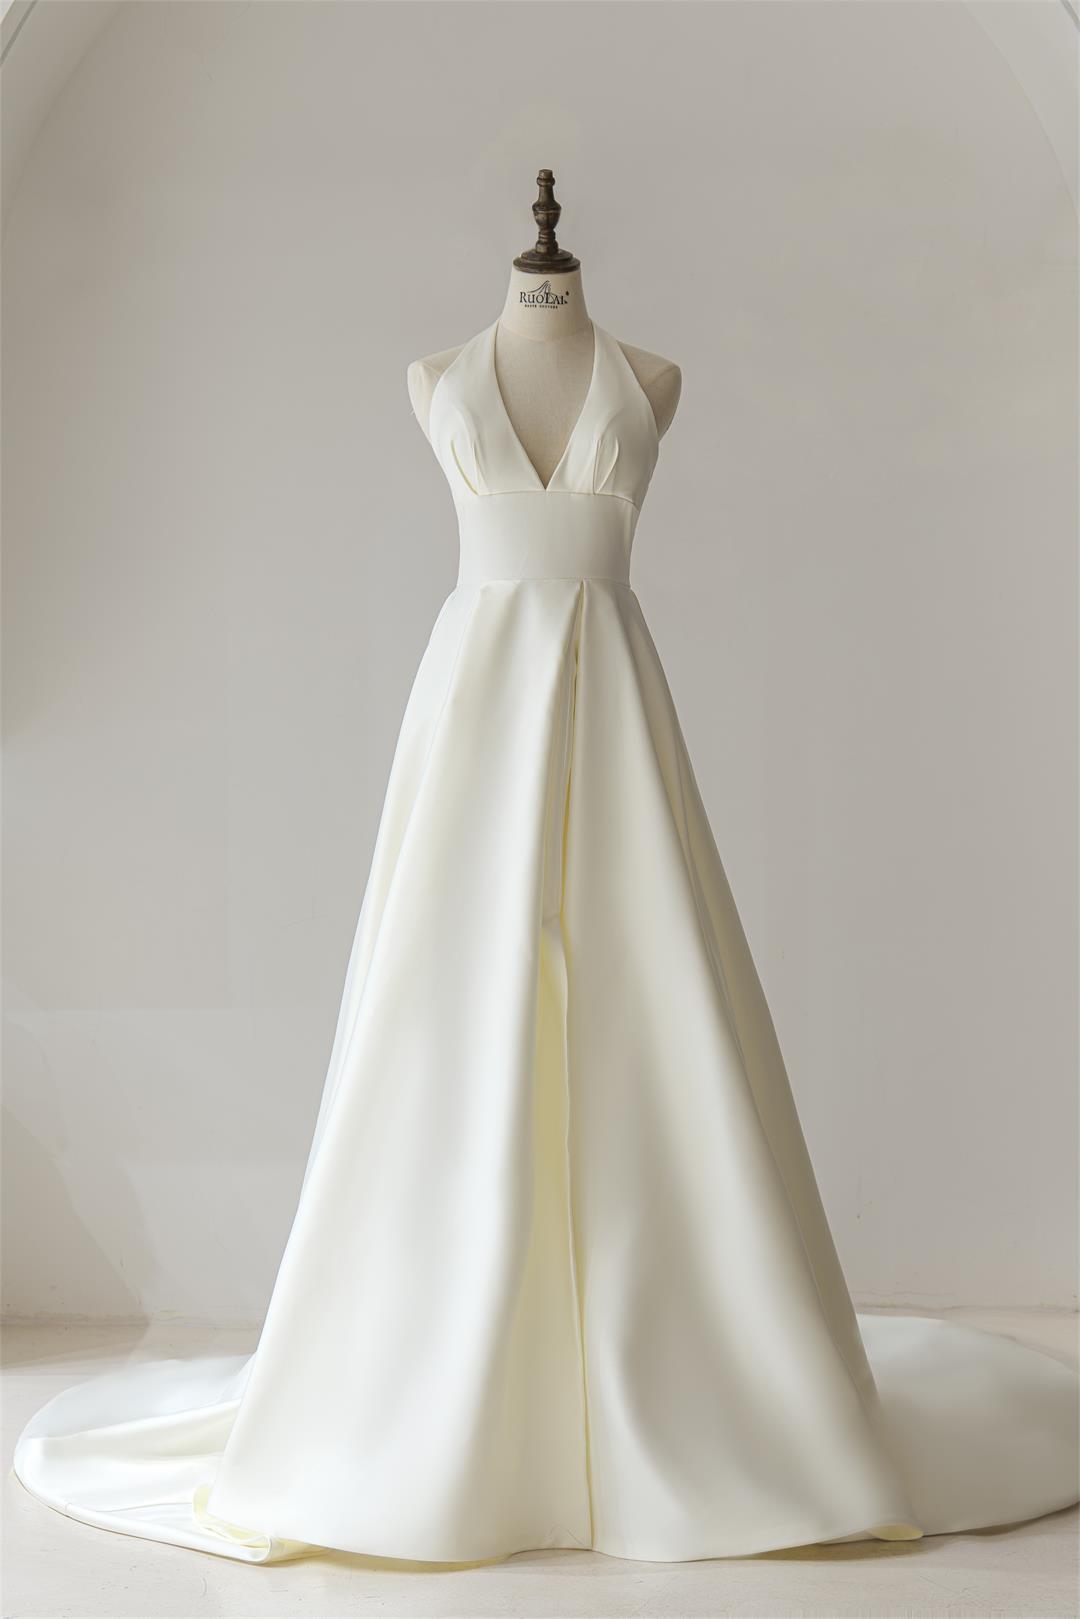 Robes de mariée françaises ligne a, décolleté en V profond, Simple, Style Hepburn, dos nu, corsage serré, bohème rétro charmant, RL1098